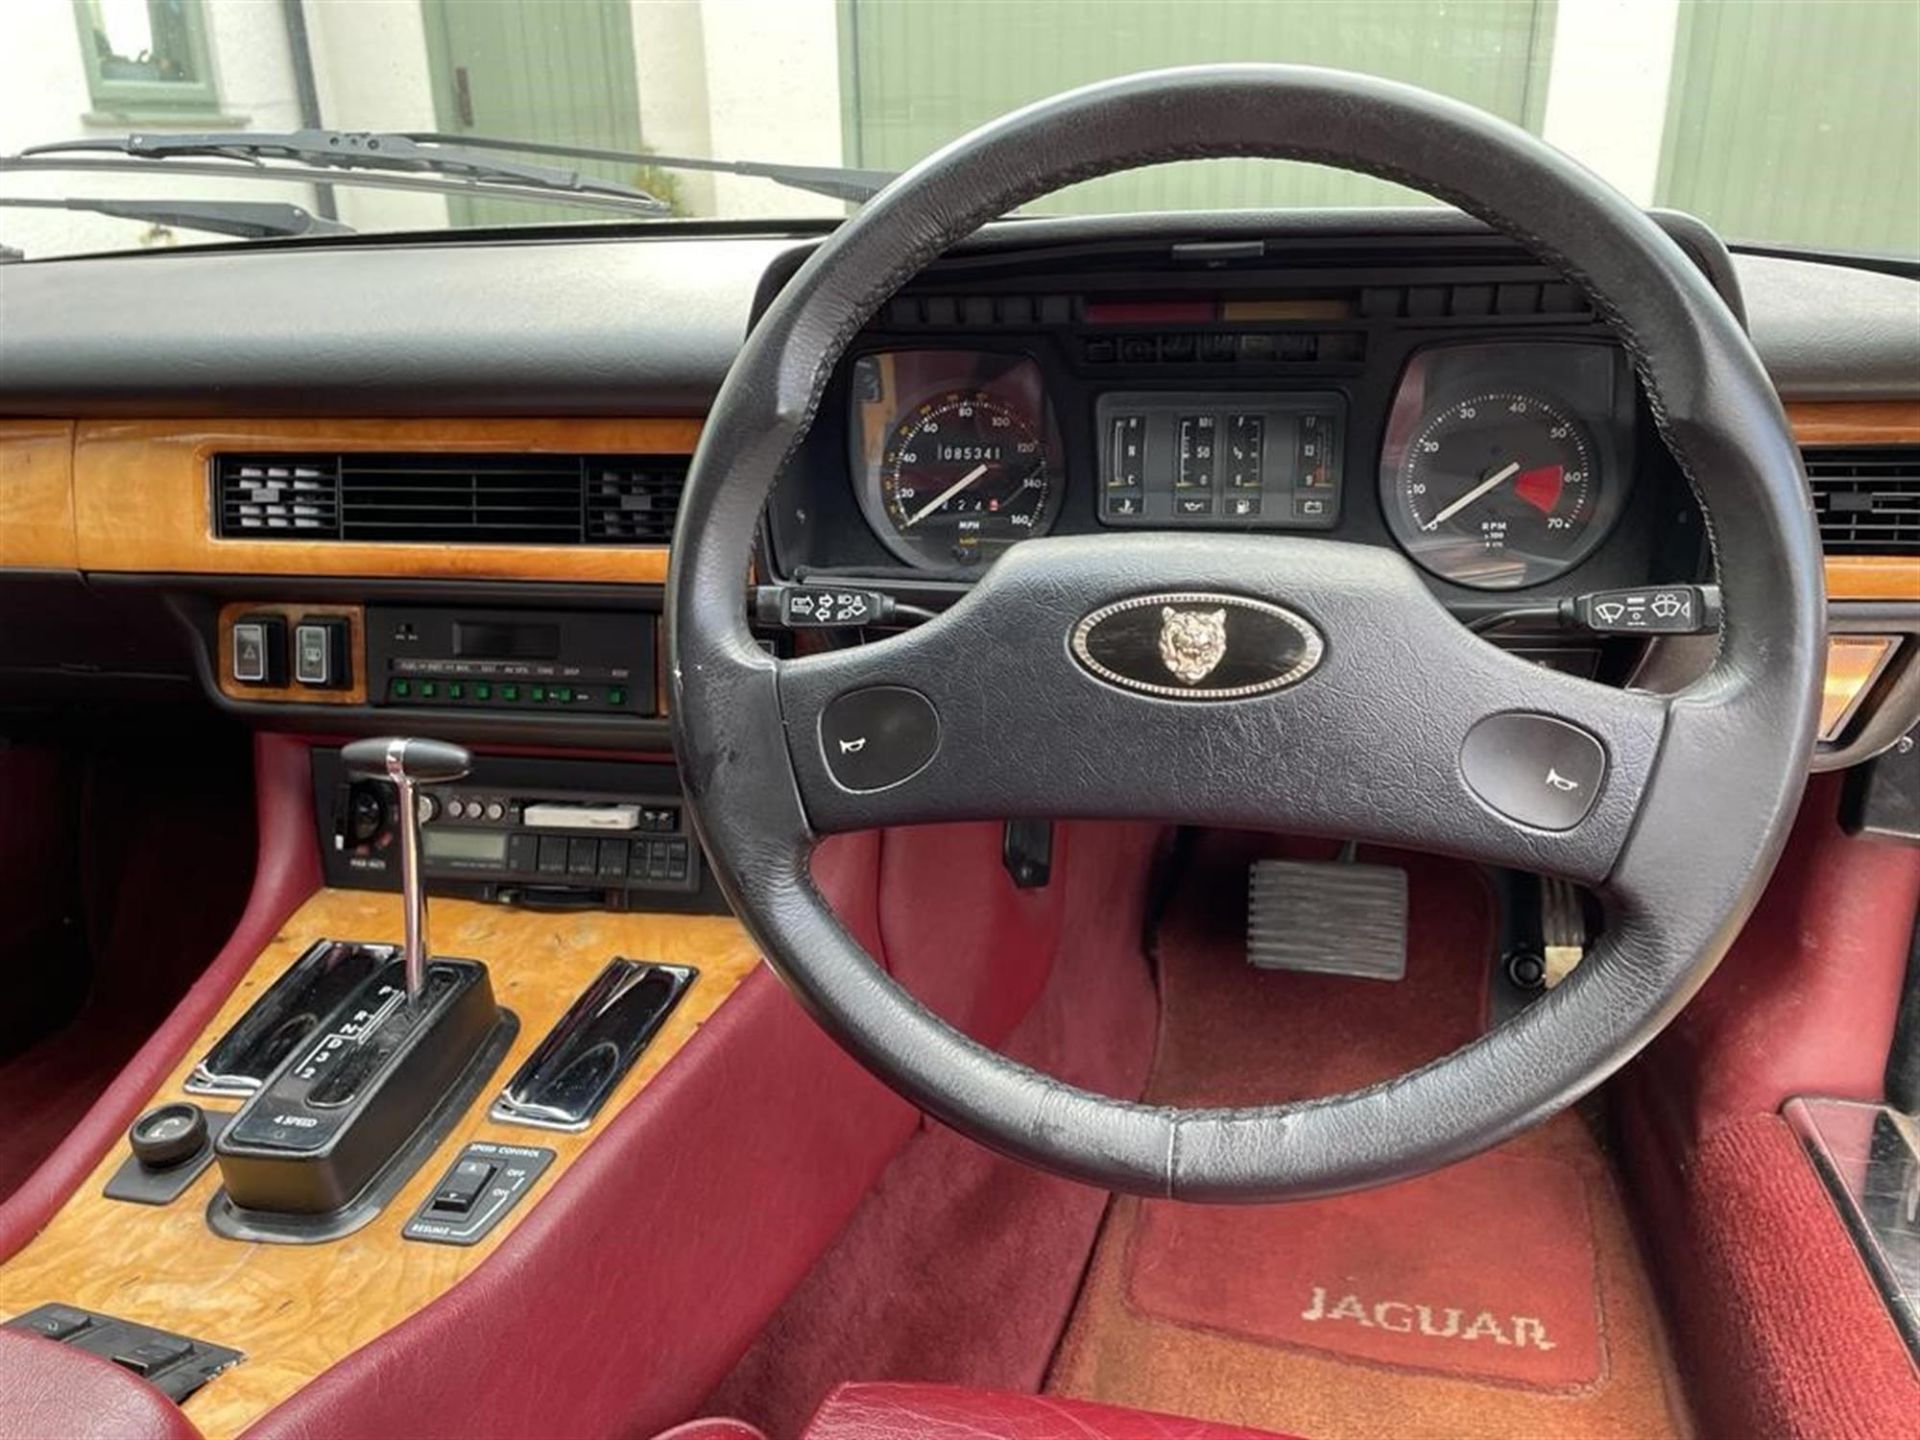 1989 Jaguar XJ-S 3.6-Litre Automatic - Image 7 of 10